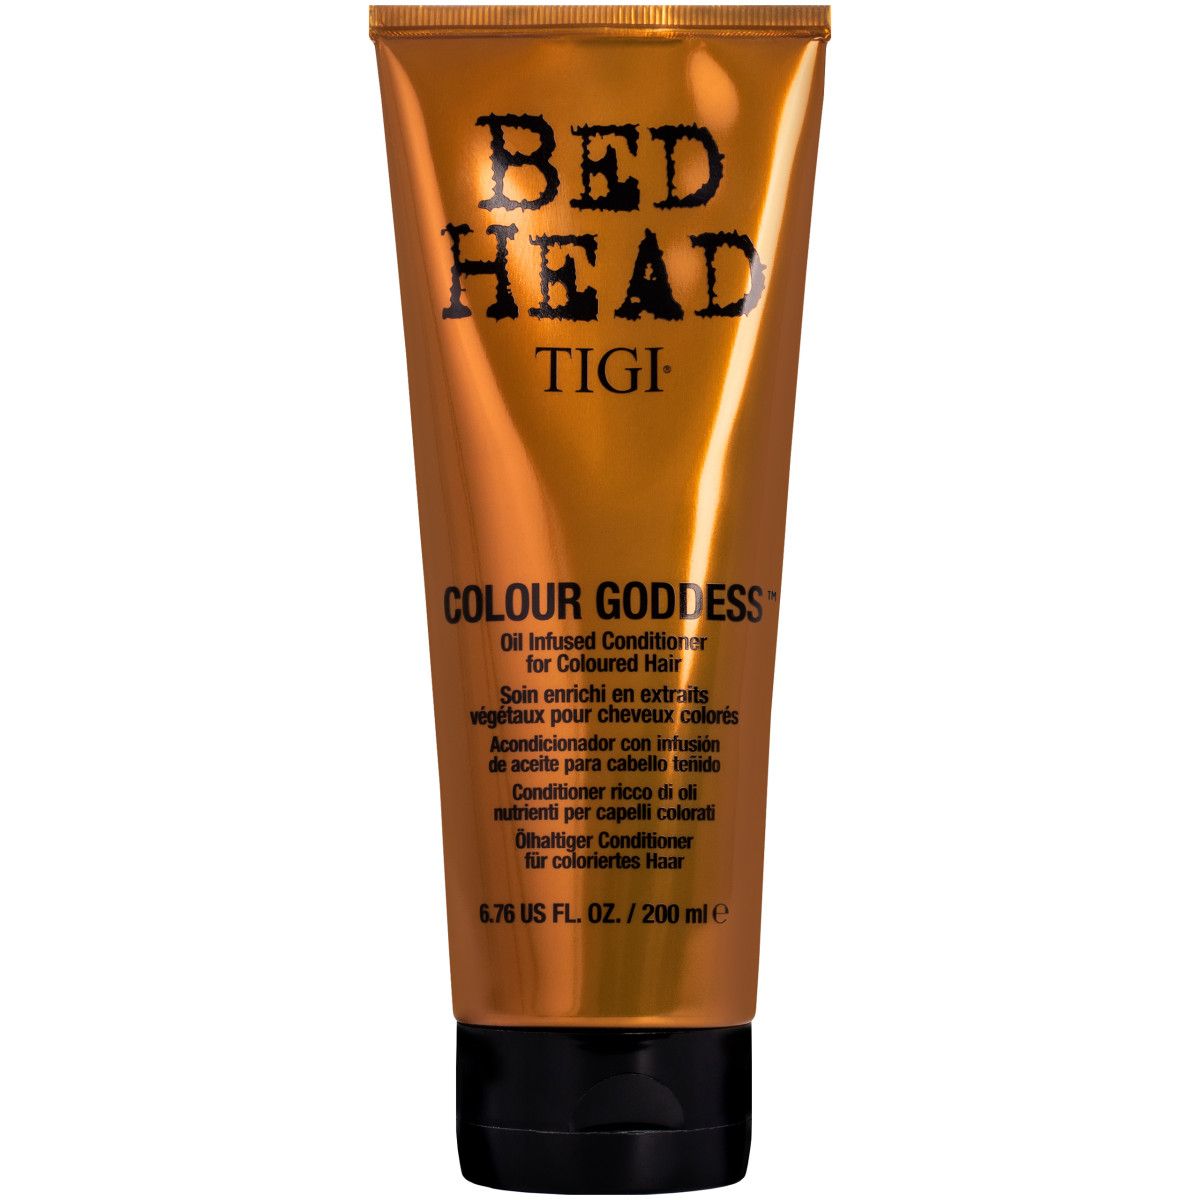 Tigi Bed Head Colour Goddess - odżywka po koloryzacji włosów, 200ml